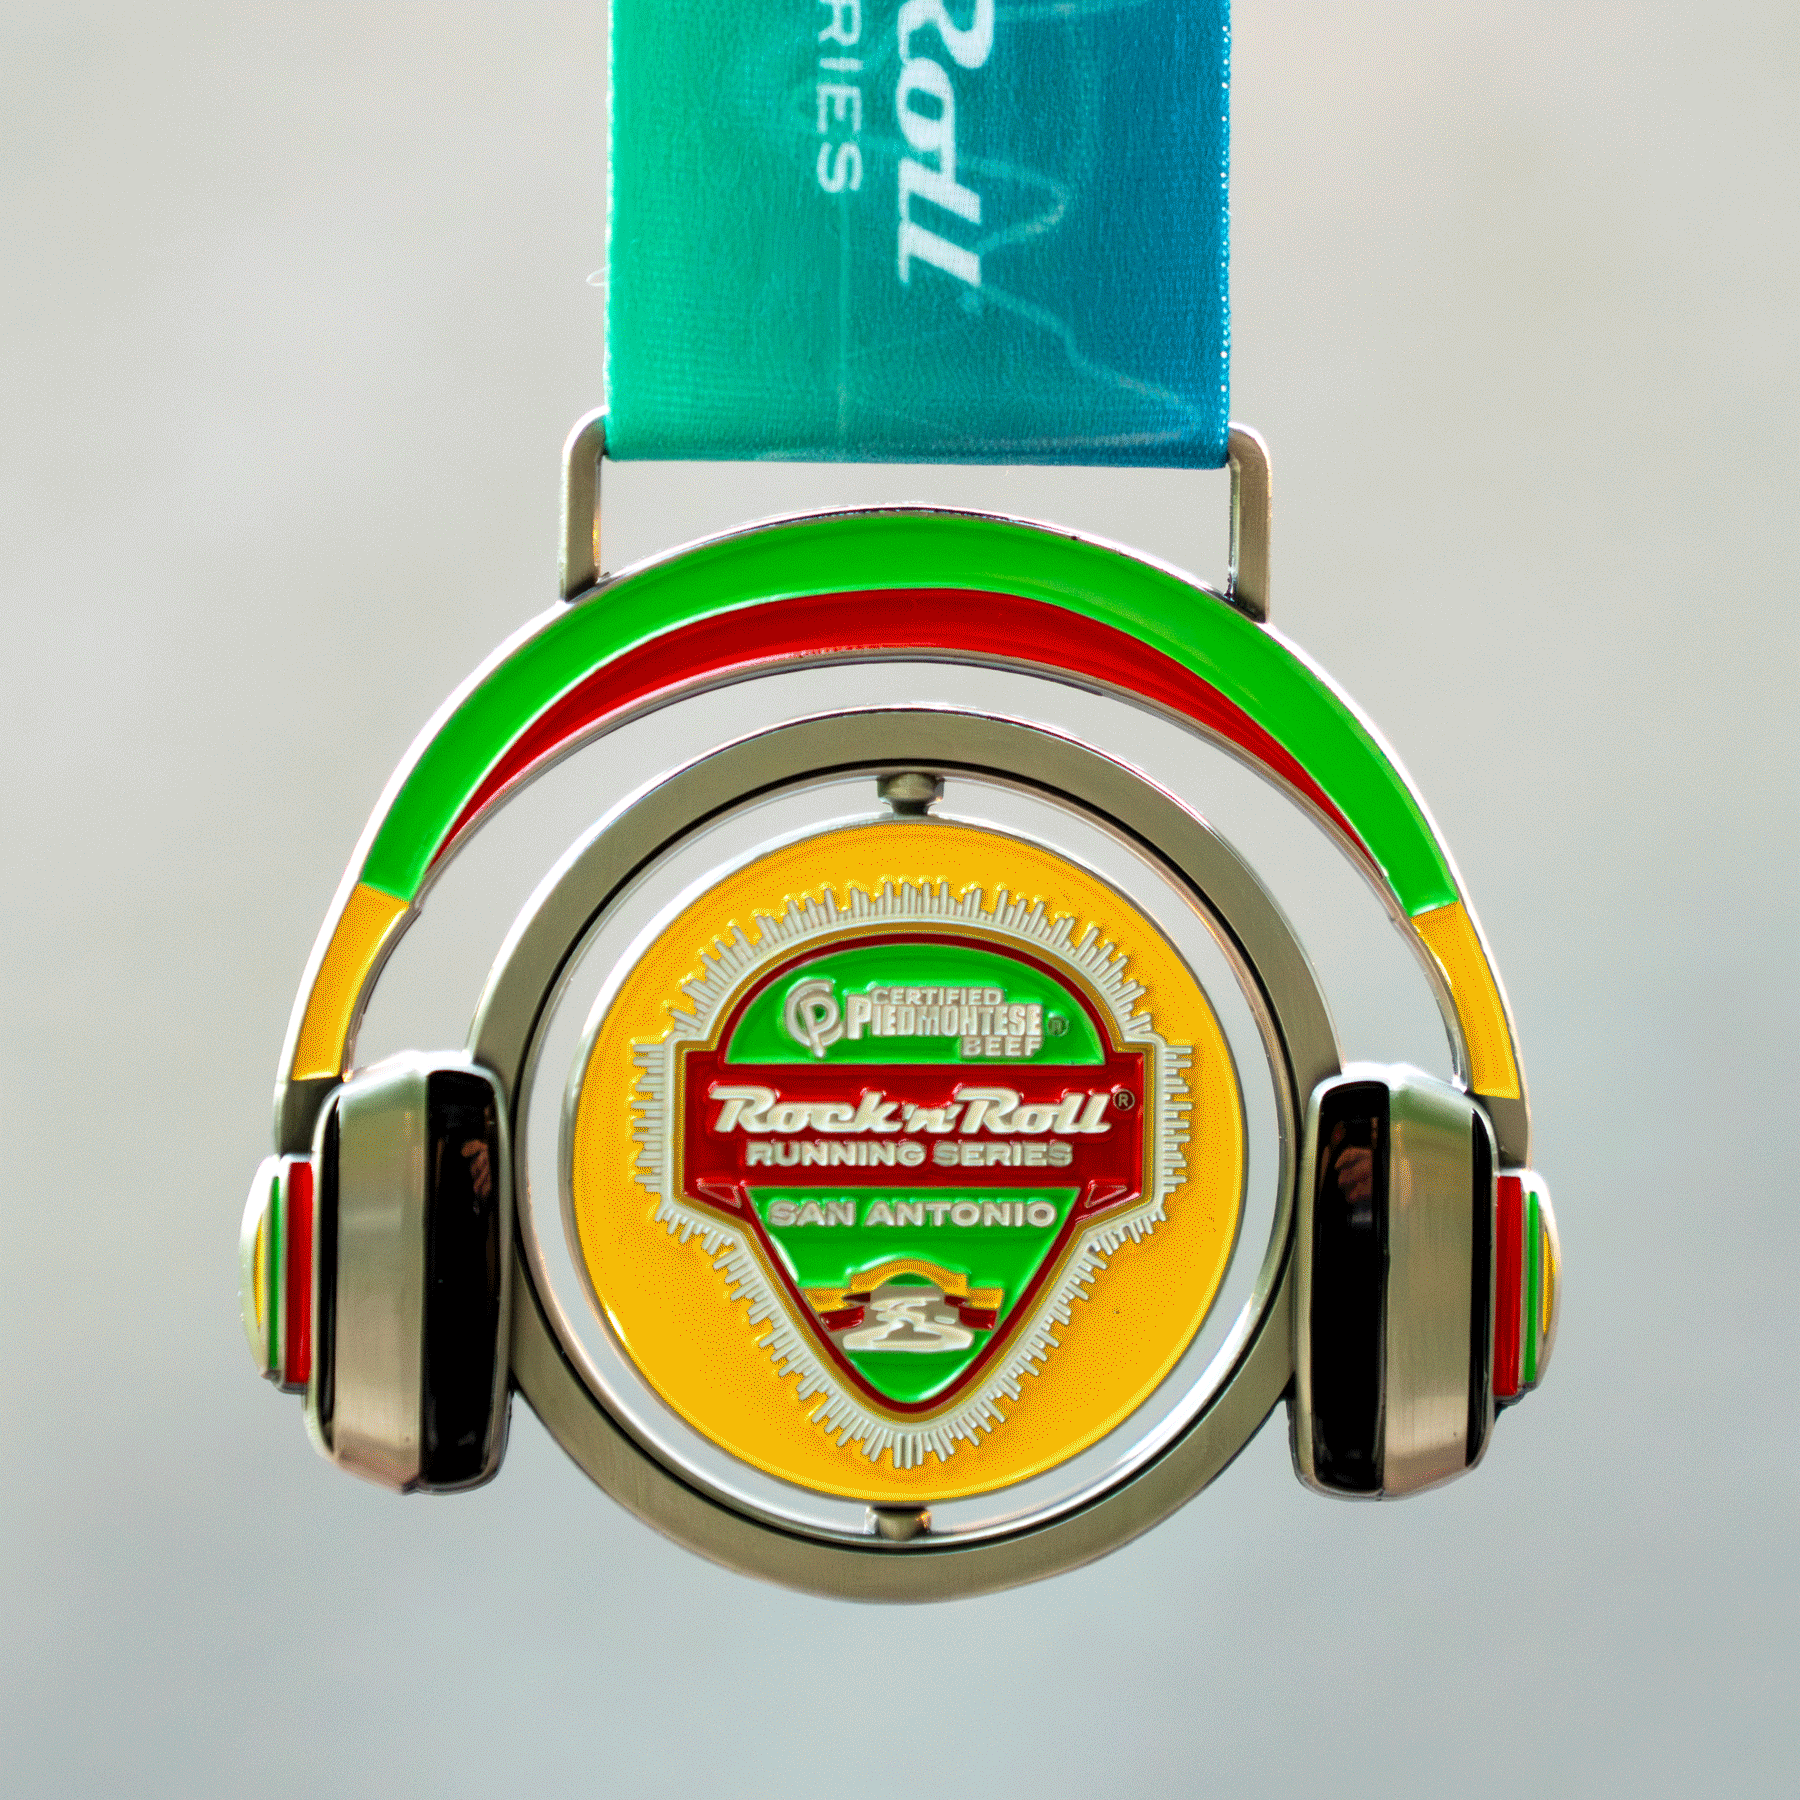 Remix Challenge Medals